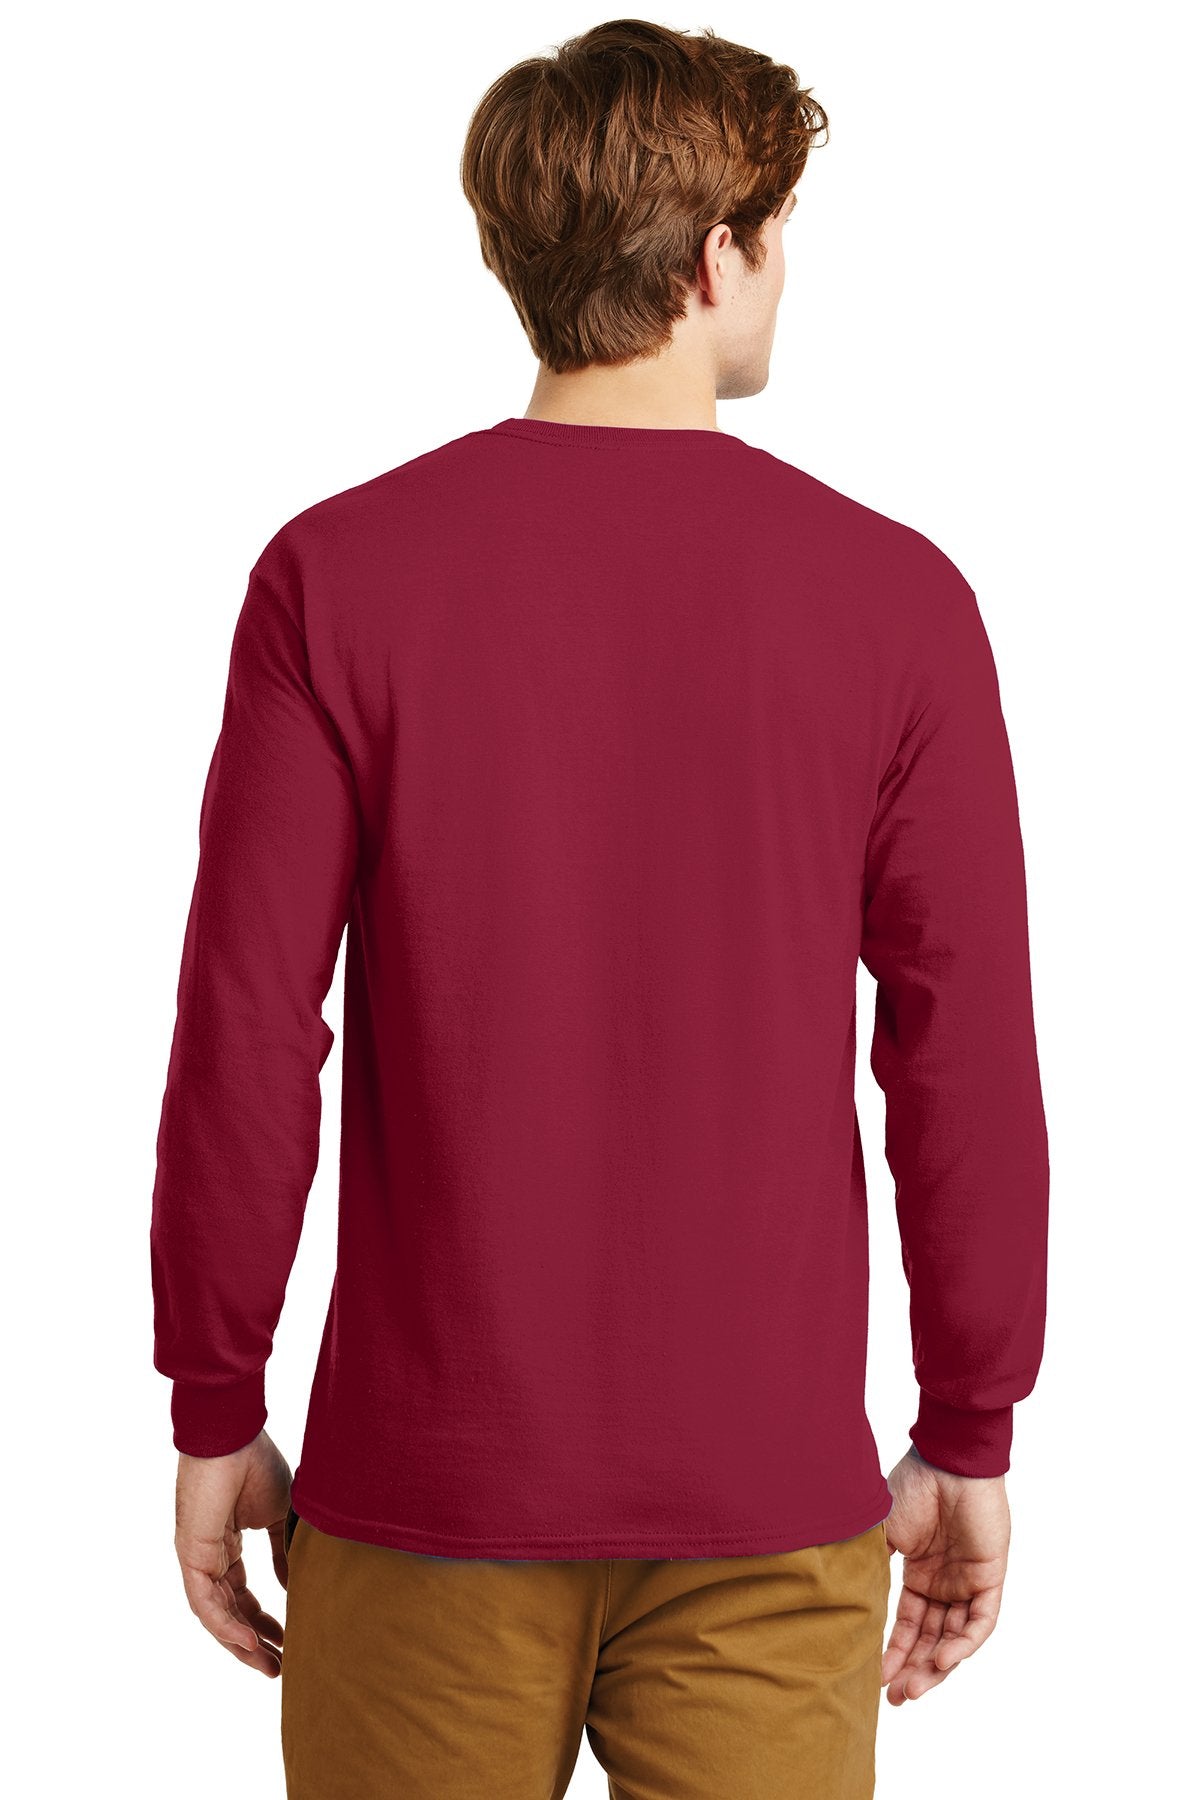 gildan ultra cotton long sleeve t shirt g2400 cardinal red